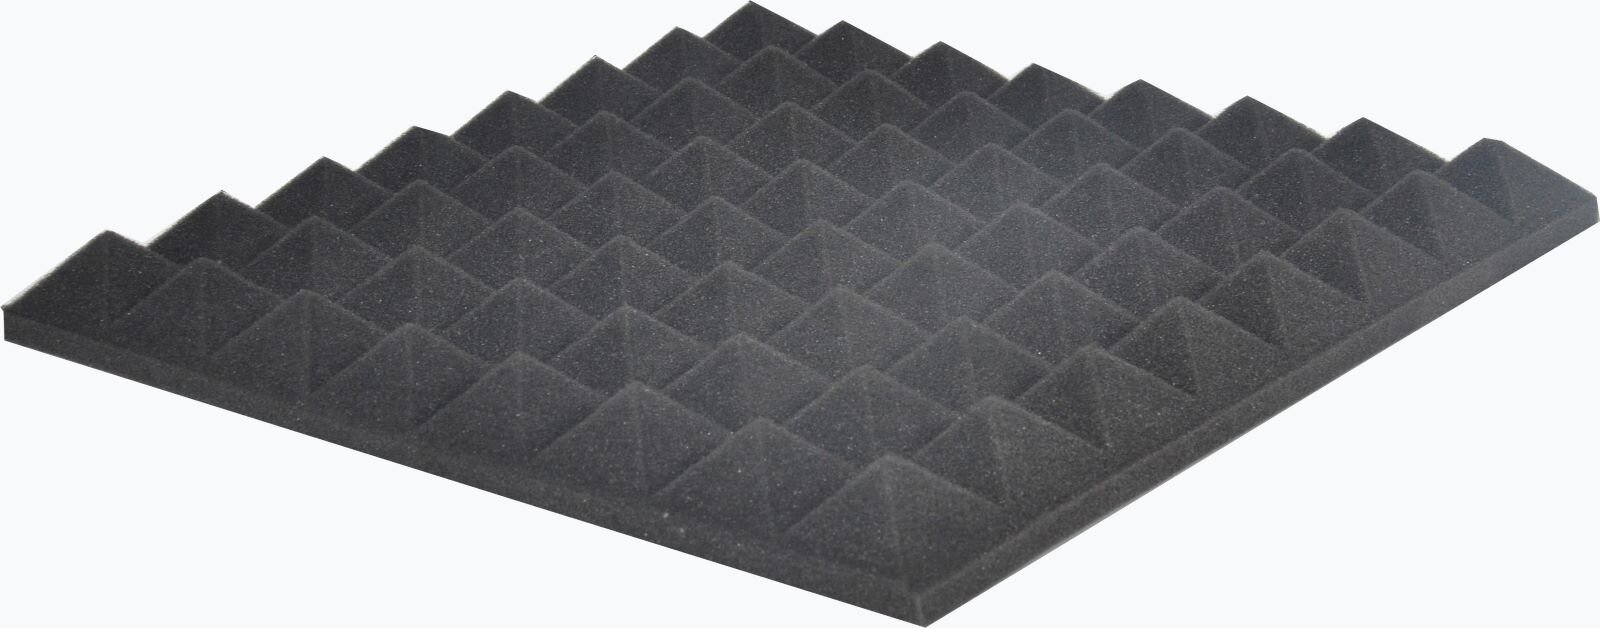 Alctron Black Acoustic Foam (each) (FOAM 200) : photo 1